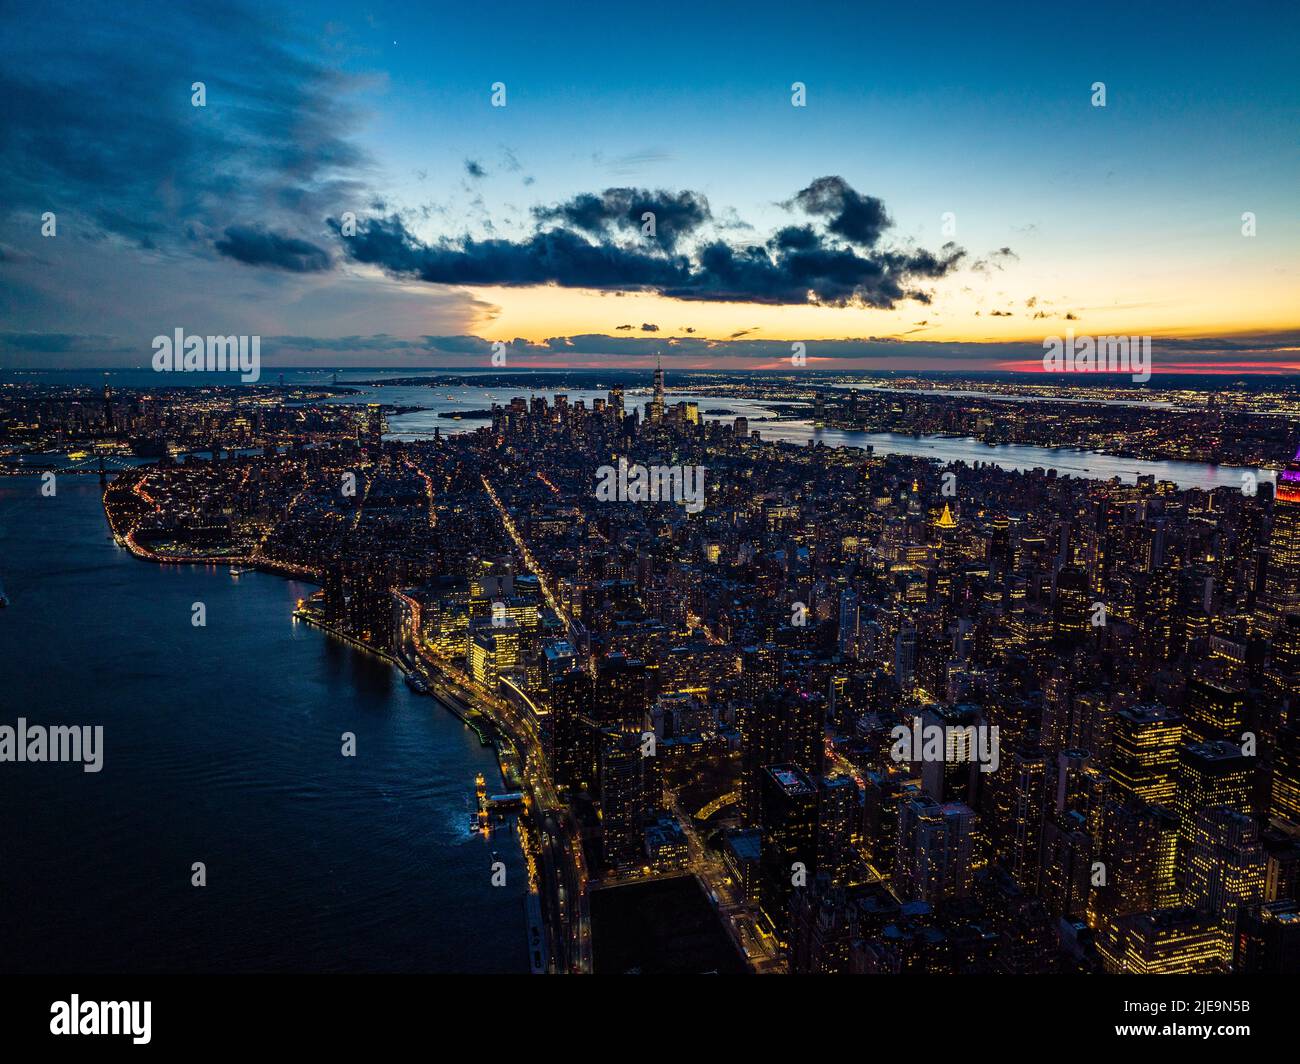 Atemberaubende Panoramaaufnahme der Stadt, die vom Fluss umgeben ist. Beleuchtete Fenster und farbenfroher Sonnenuntergang. Manhattan, New York City, USA Stockfoto